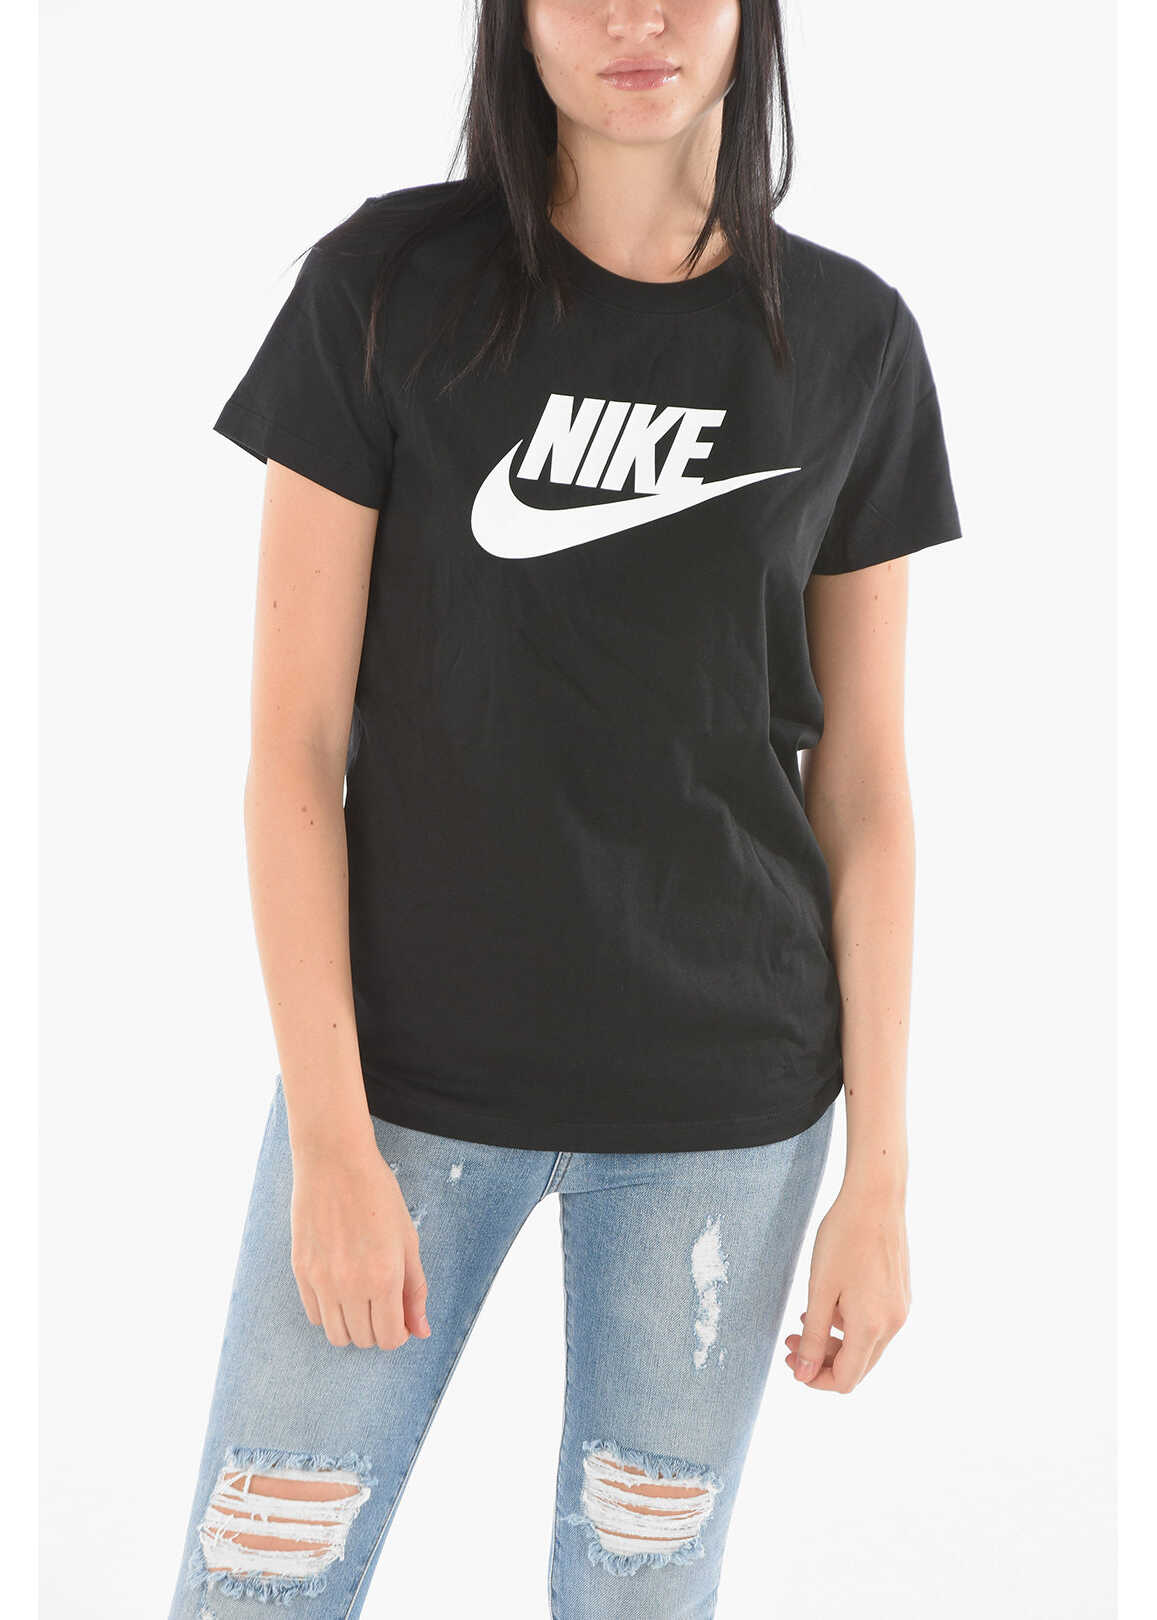 Nike Crew Neck Printed Logo Cotton T-Shirt Black image